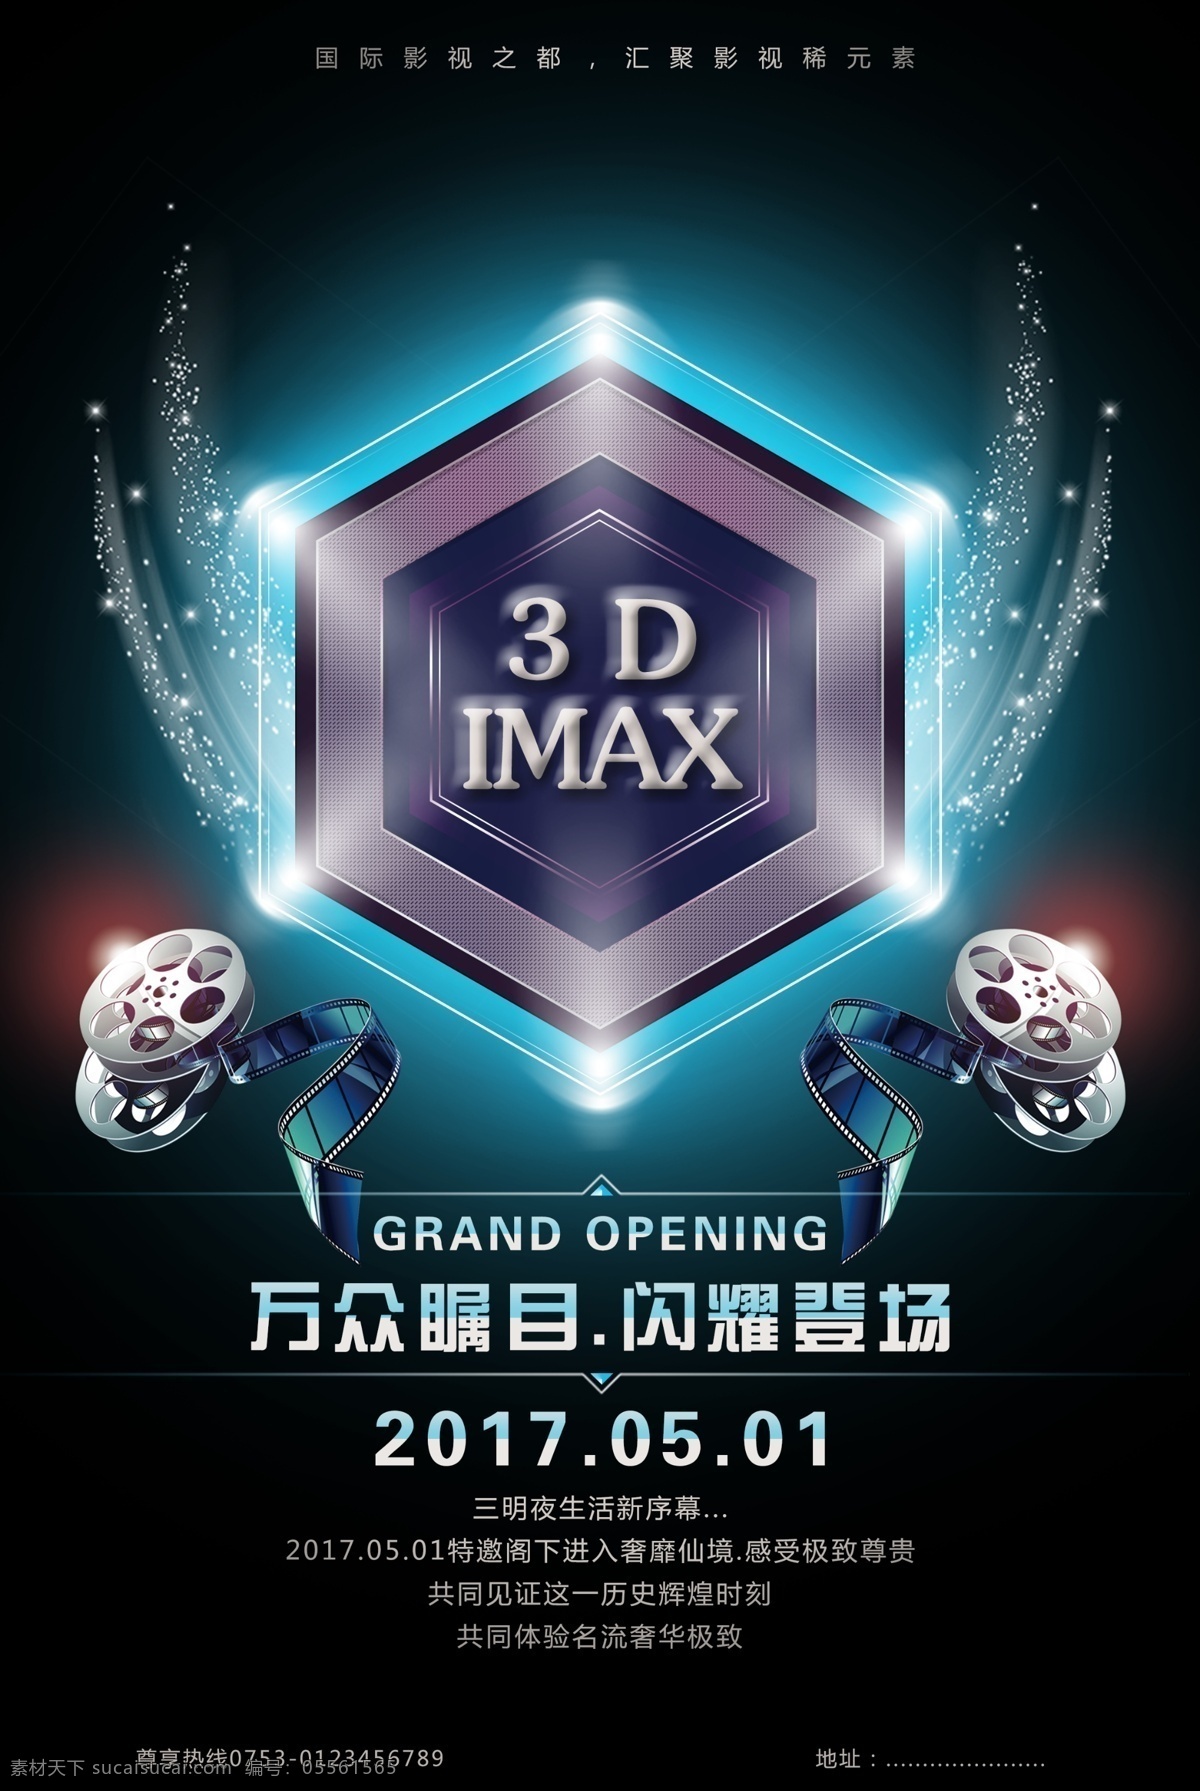 3dimax 电影 宣传 广告 海报 图 电影设计 电影广告图 电影宣传图 电影院设计 灯光效果